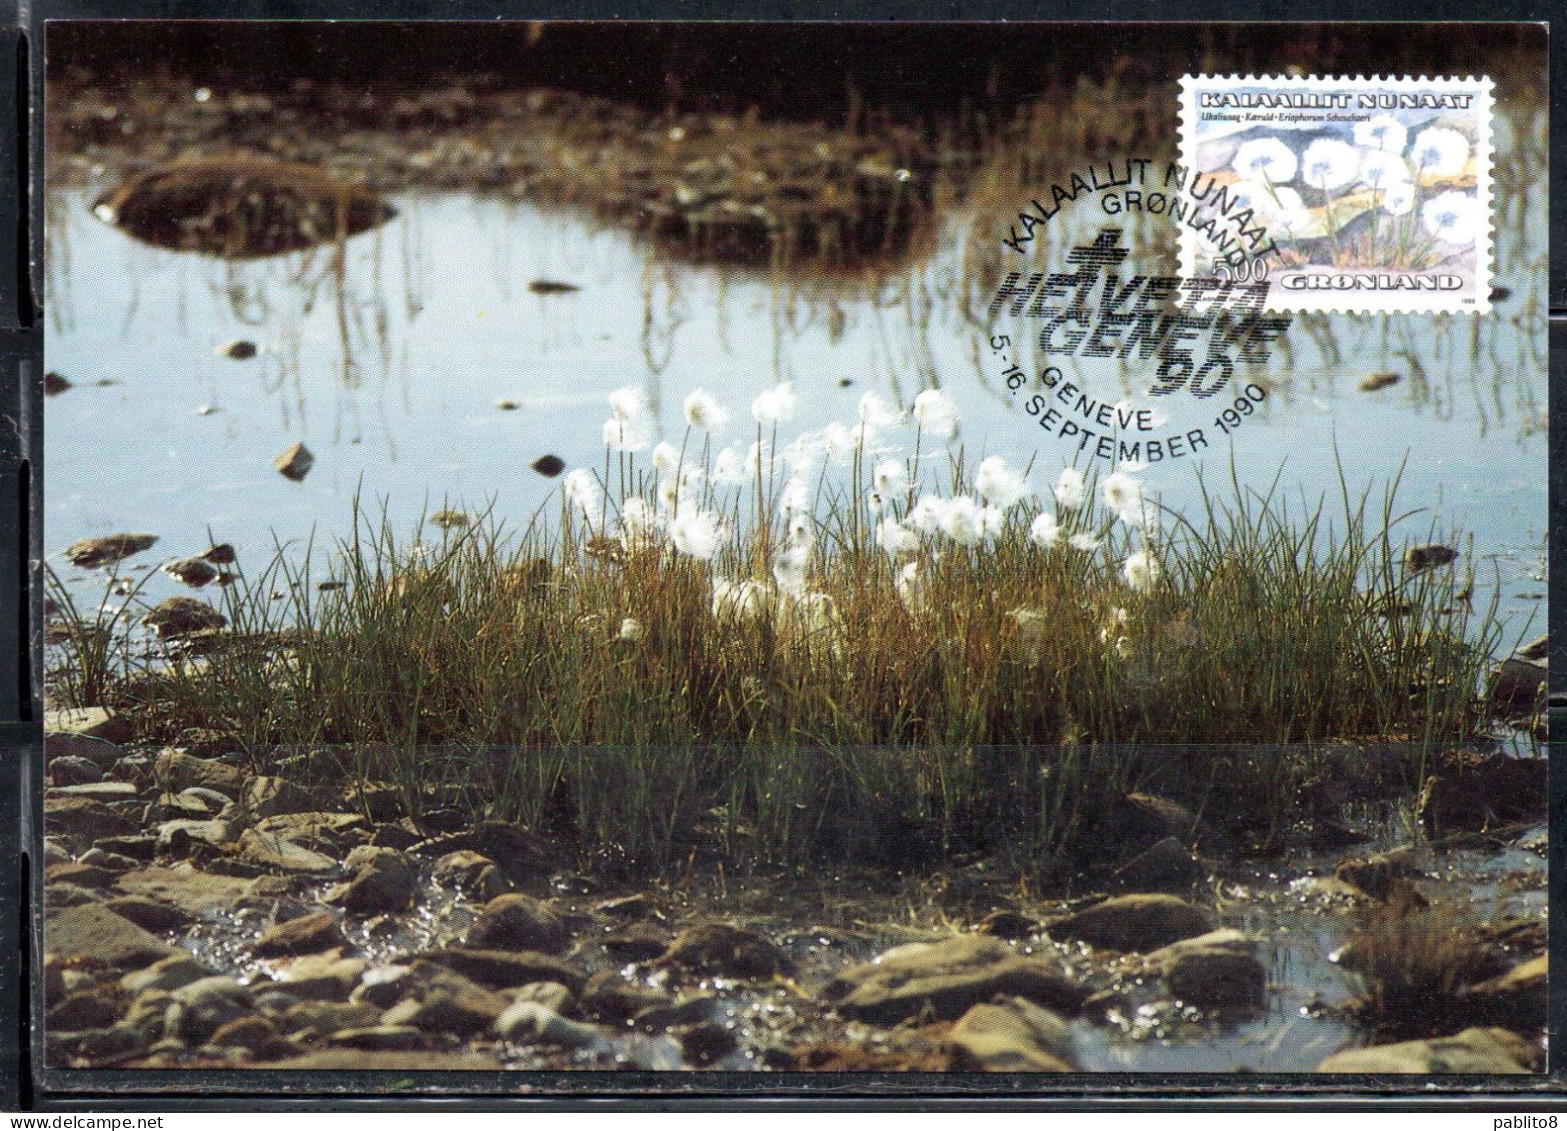 GREENLAND GRONLANDS GROENLANDIA GRØNLAND 1989 1992 1990 FLORA PLANTS ERIOPHORUM SCHEUCHZERI 5k MAXI MAXIMUM CARD CARTE - Maximumkaarten